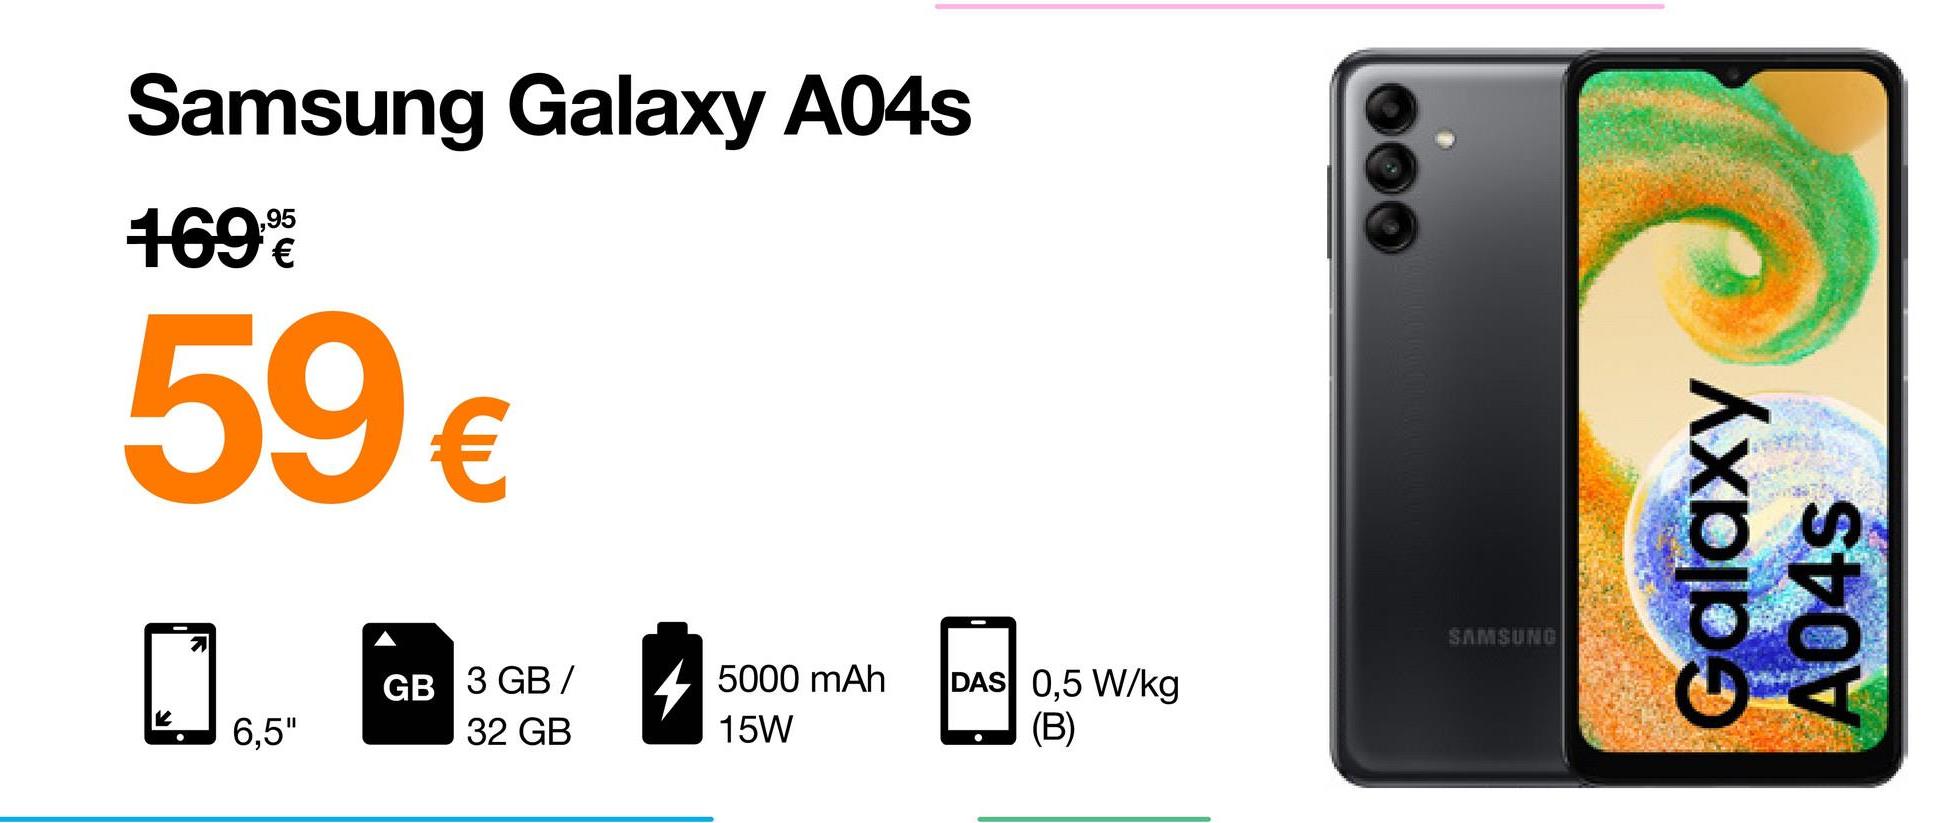 Samsung Galaxy A04s
1699
59 €
6,5"
GB 3 GB/
32 GB
4
5000 mAh
15W
DAS 0,5 W/kg
(B)
SAMSUNG
Galaxy
A04s